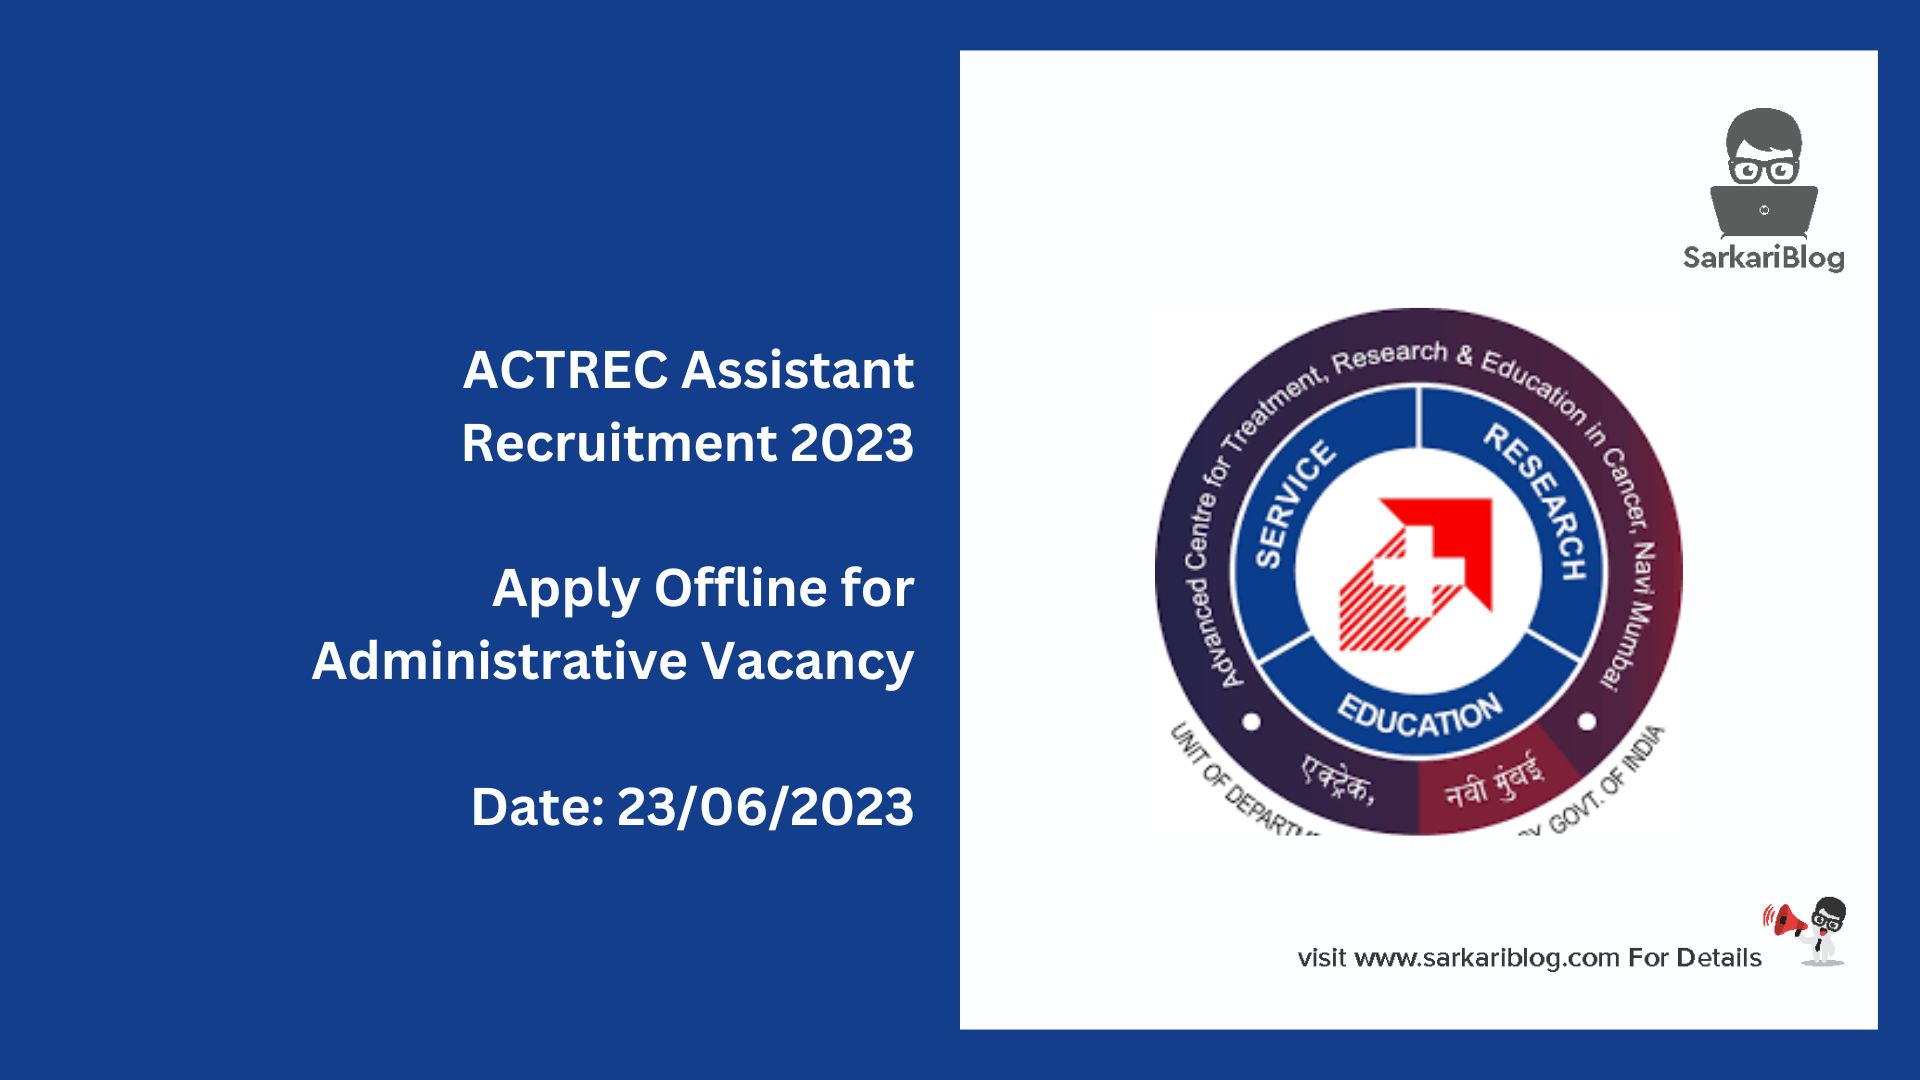 ACTREC Assistant Recruitment 2023